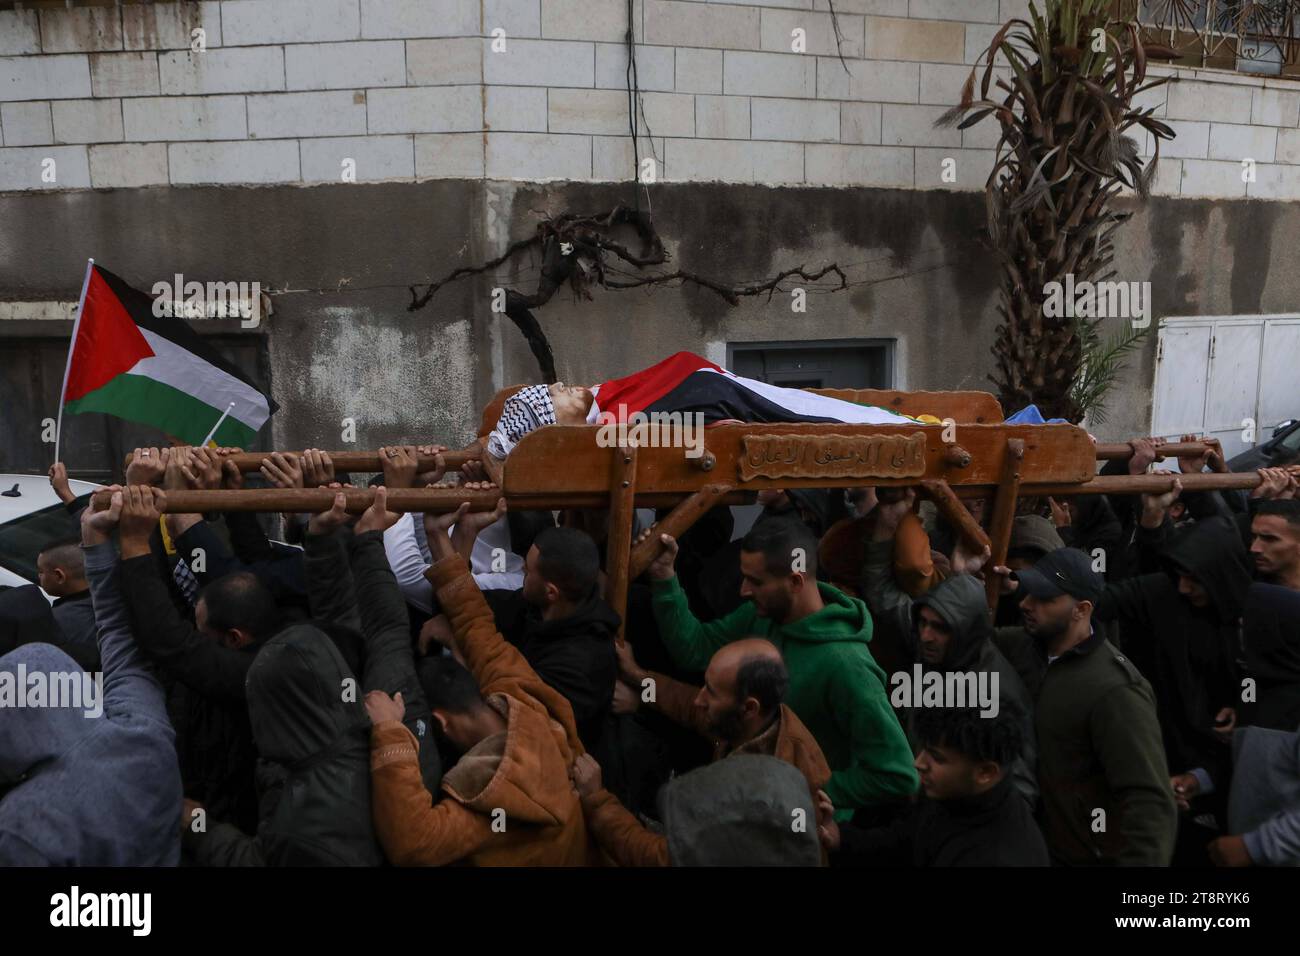 NOTA DE LOS EDITORES: CONTENIDO GRÁFICO. Los dolientes llevan el cadáver del palestino de 21 años Muhammad Adel al-Saraheen, presuntamente asesinado por las fuerzas israelíes. Los dolientes llevan el cadáver del palestino de 21 años Muhammad Adel al-Saraheen, presuntamente asesinado por las fuerzas israelíes a principios del 20 de noviembre de 2023, durante su funeral en la aldea de Beit Ula, al norte de la ciudad ocupada de Hebrón en Cisjordania, en medio de continuas batallas entre Israel y el grupo militante Hamas. Foto de Mamoun Wazwaz apaimages Hebron Cisjordania Territorio Palestino 201123 Hebron MW 0011 Derechos de autor: XapaimagesxMamounxWazwazxxapaimagesx Crédito: Foto de stock